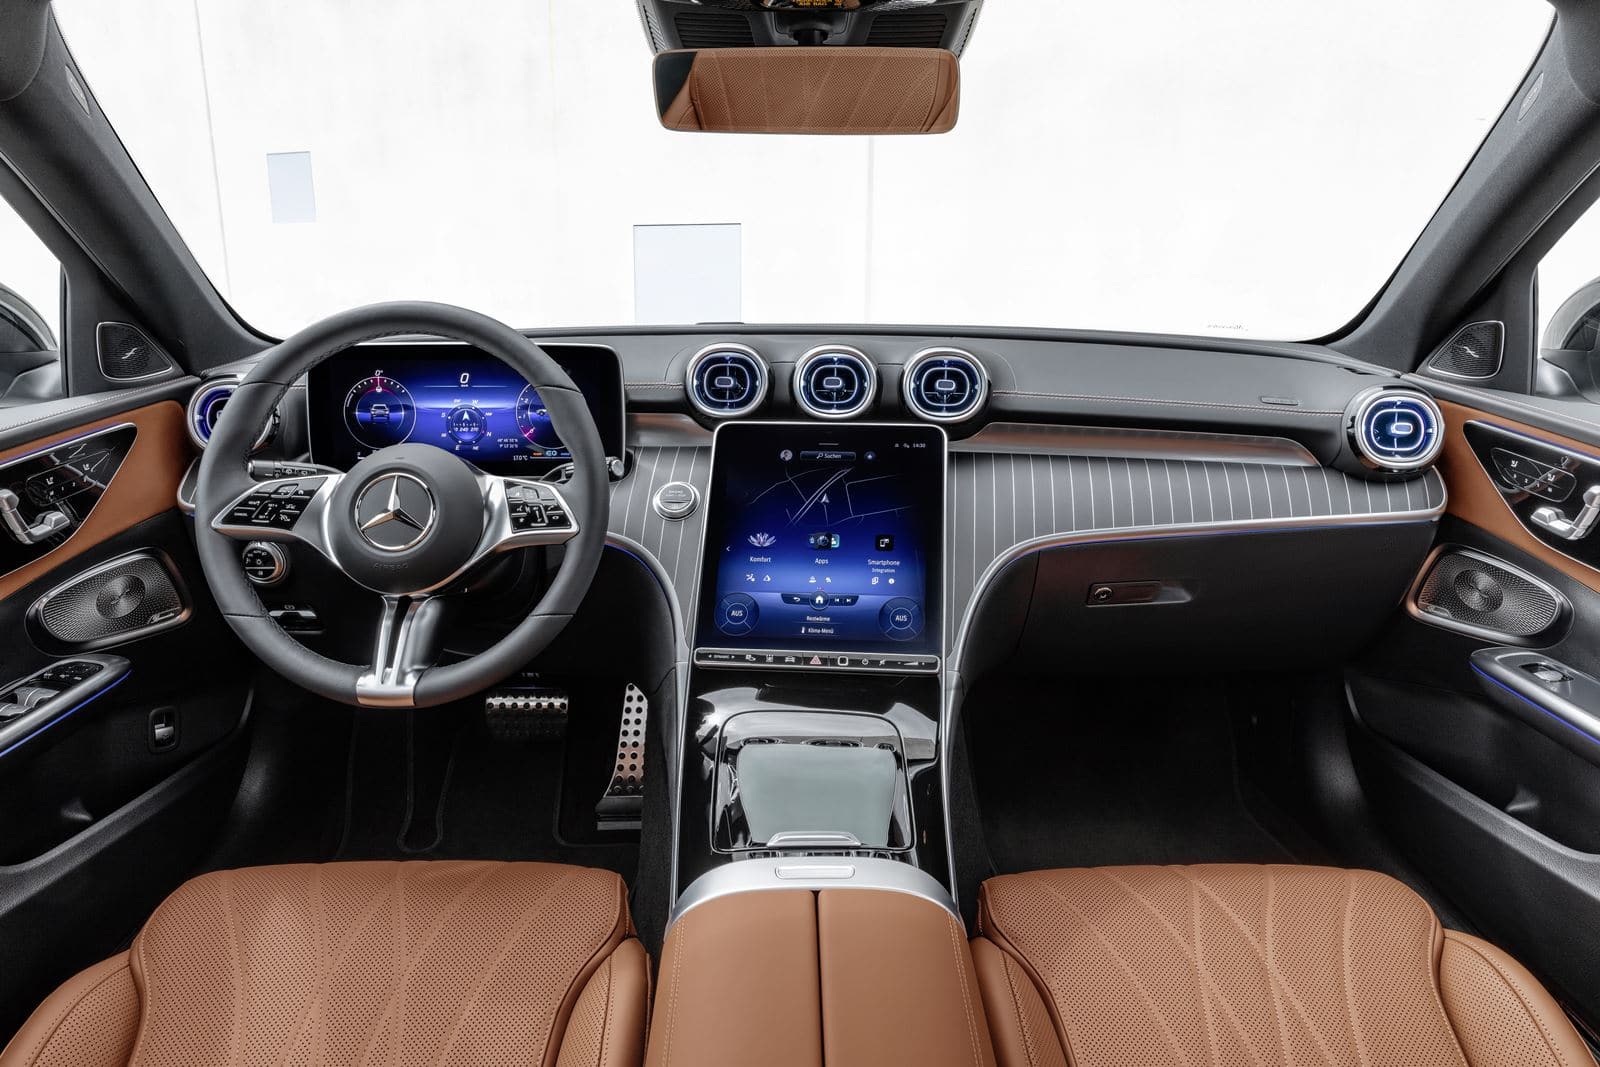 Mercedes Clase C interior